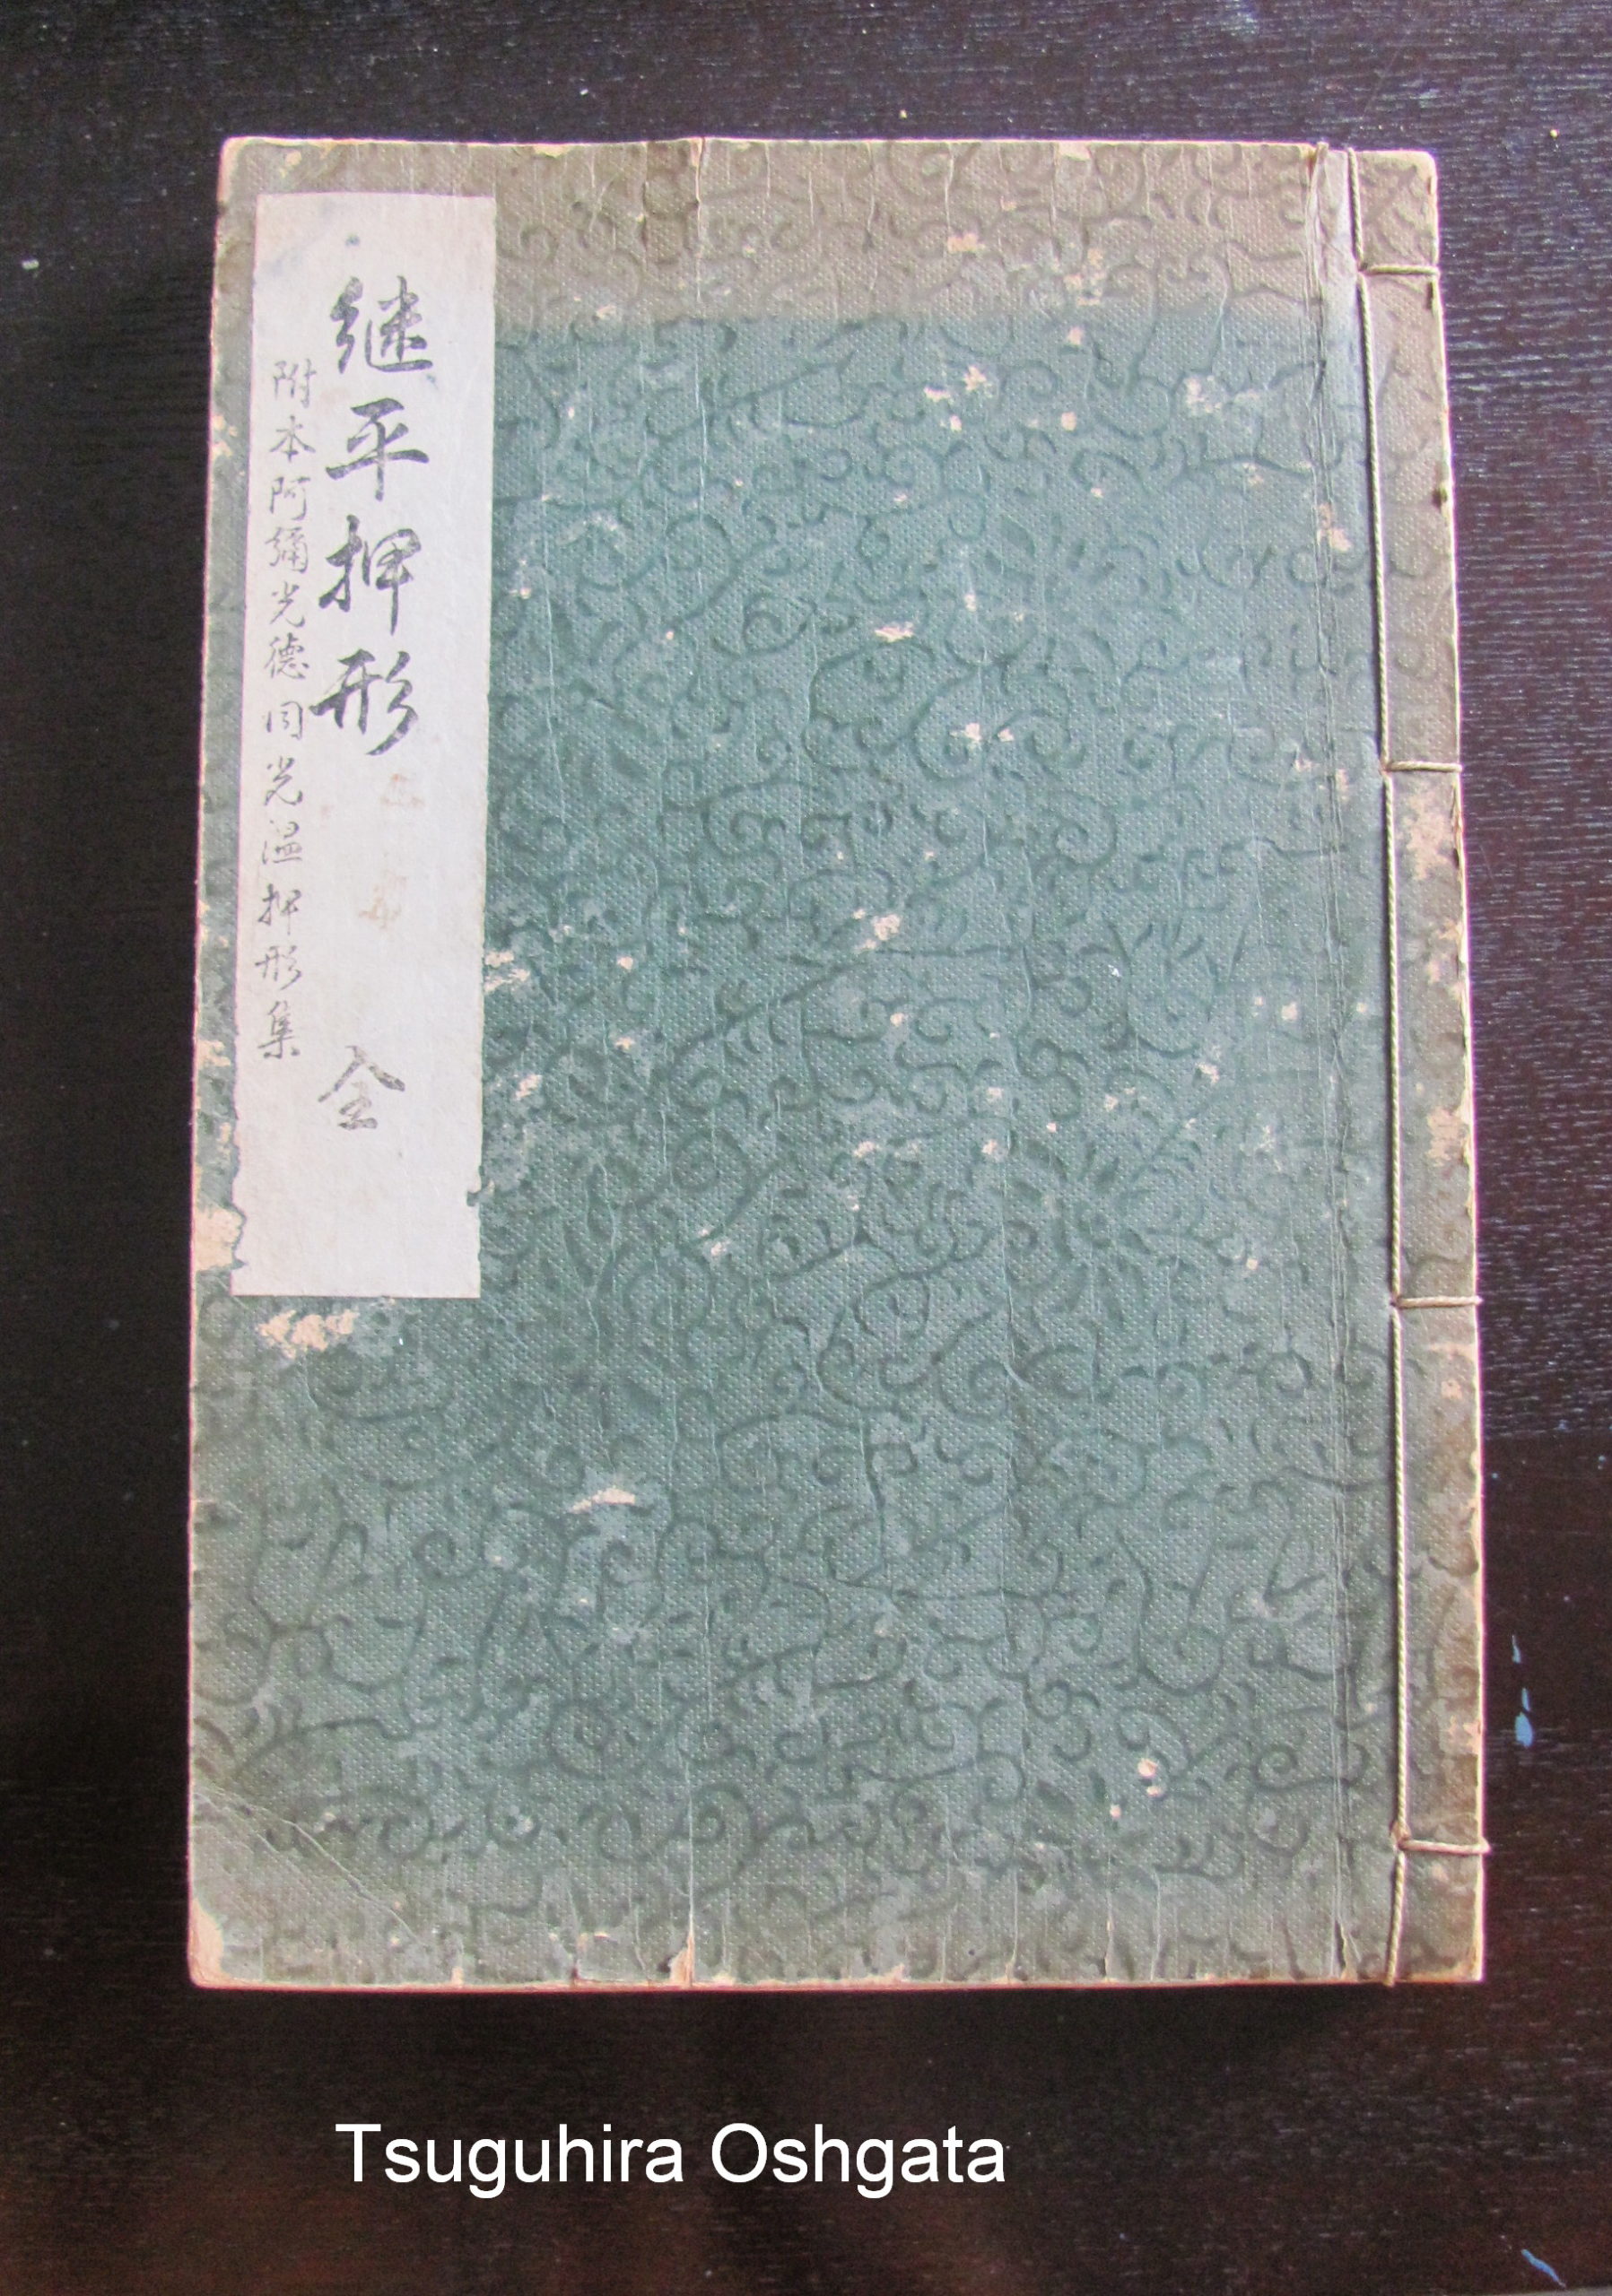 B1082. Tsuguhira Oshigata